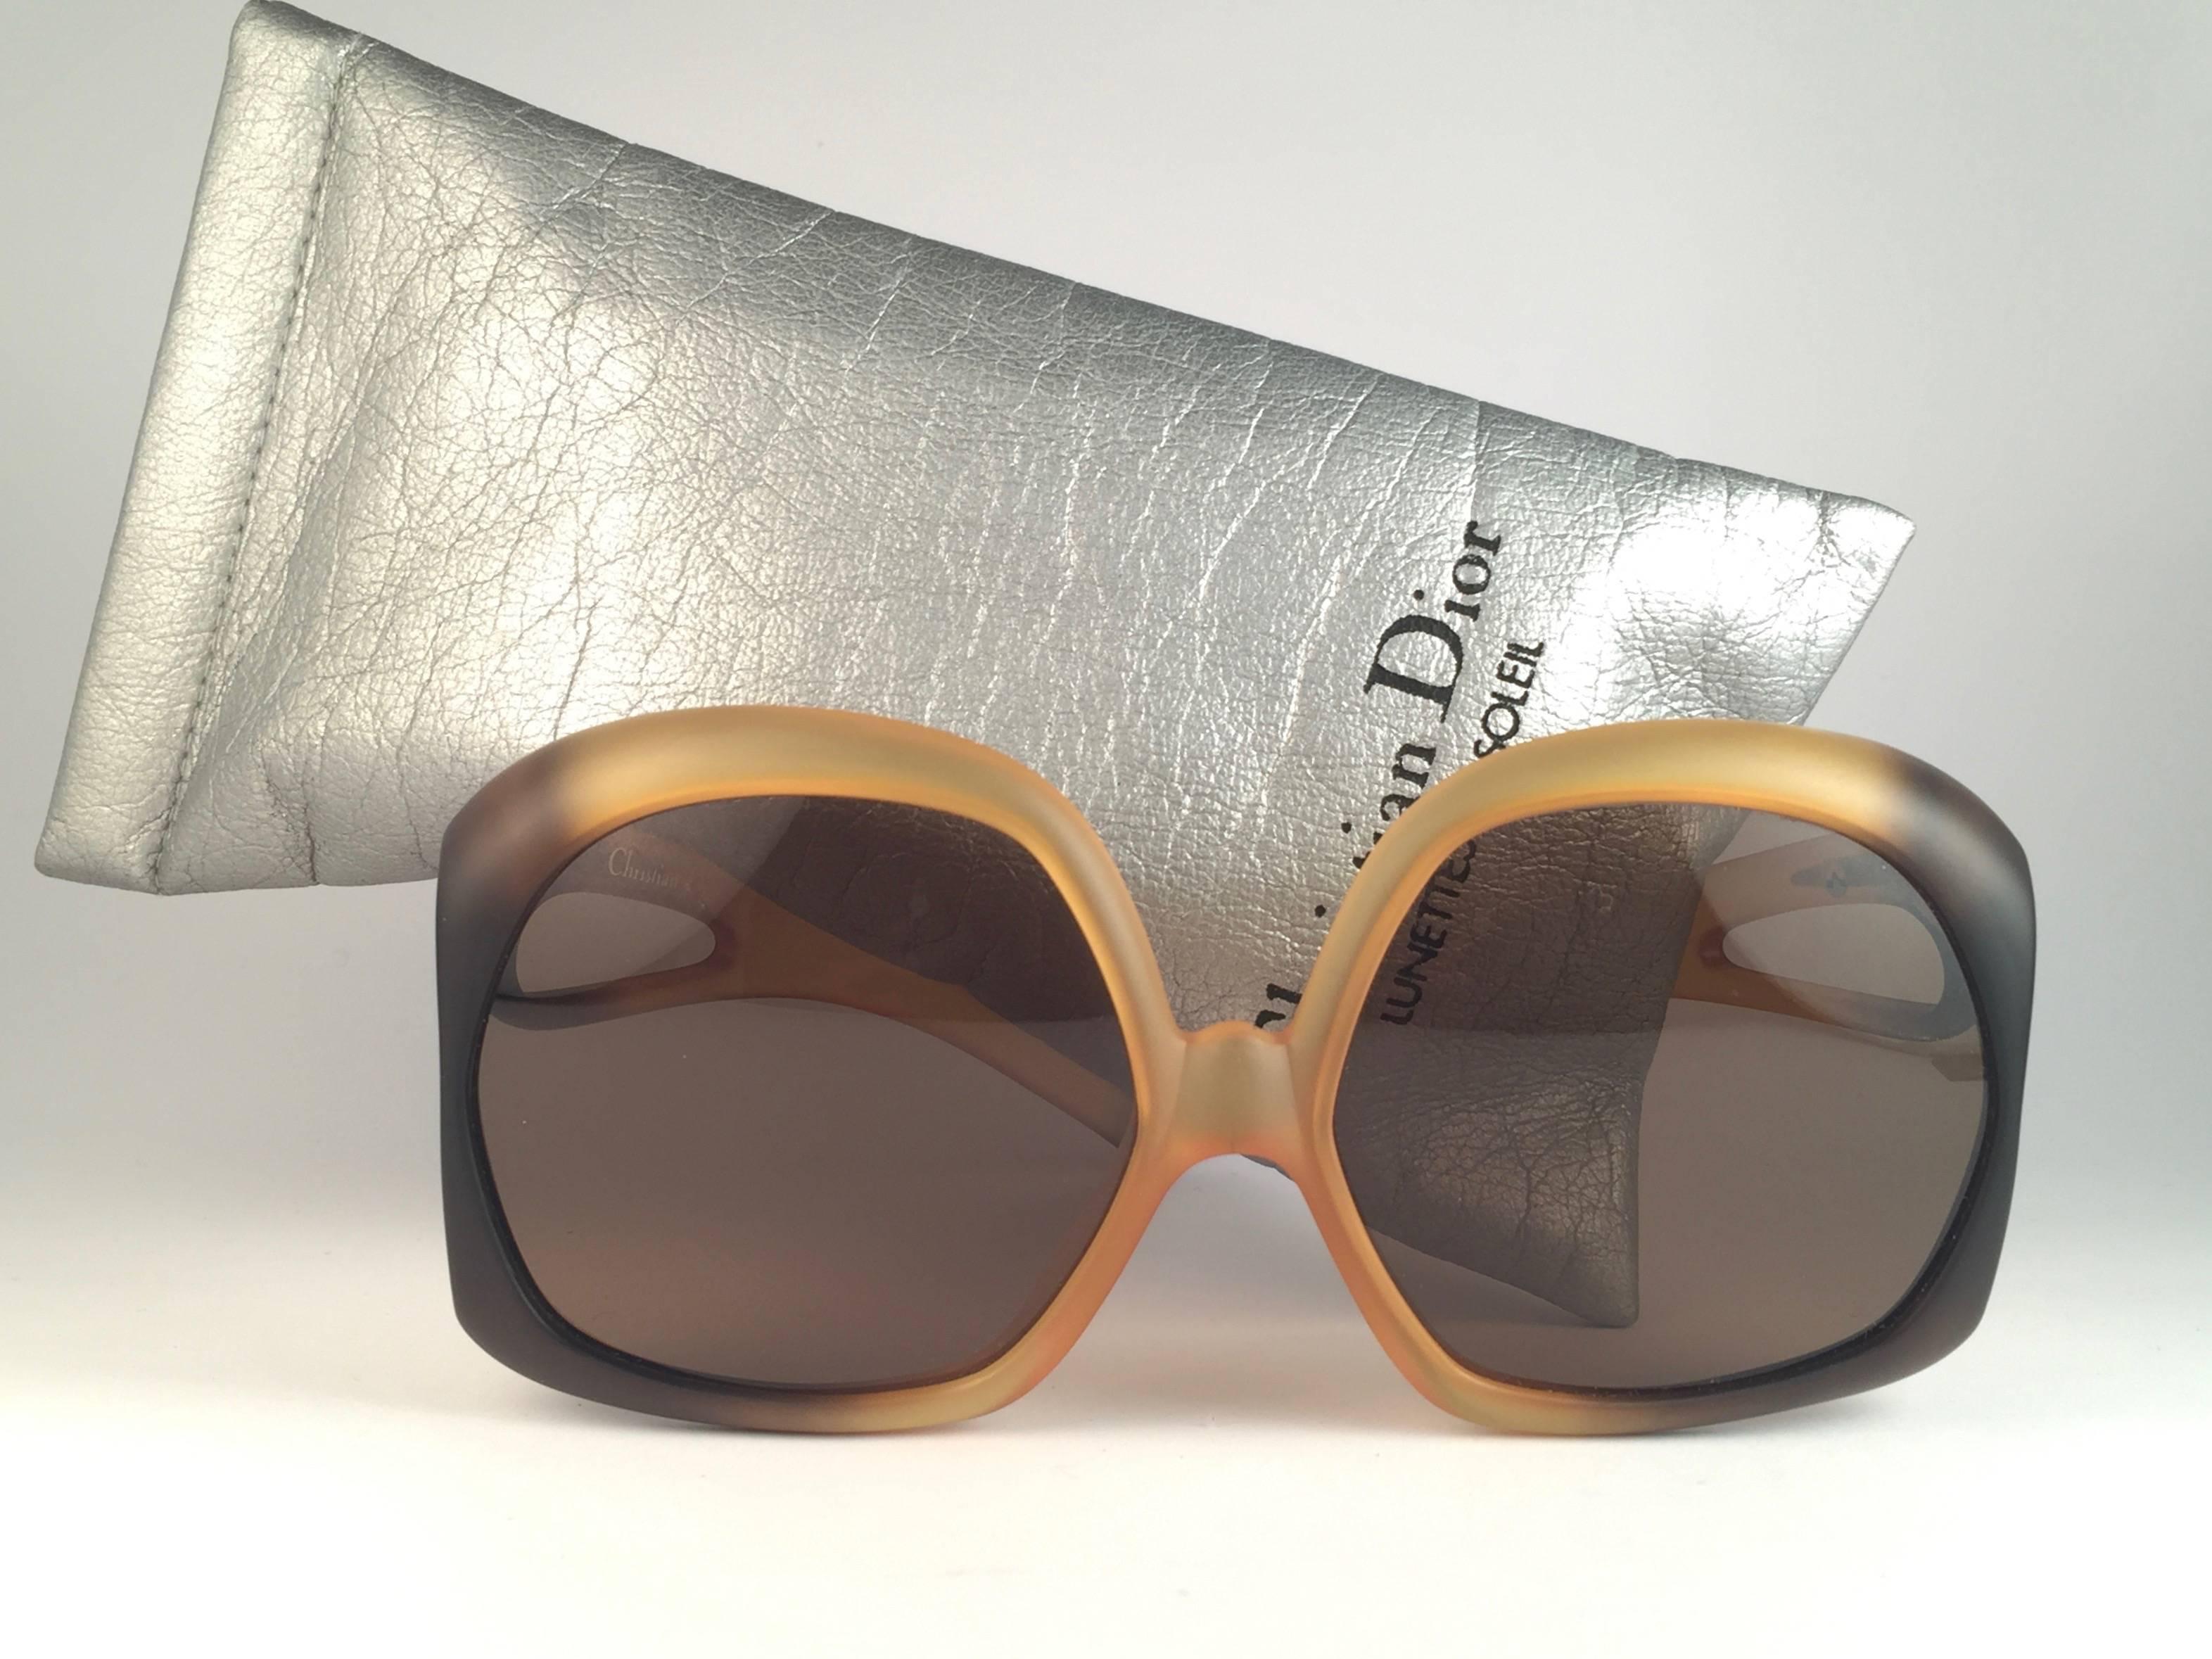 New Vintage Christian Dior 2005 Monture ombre ambre mate avec des verres marron unis impeccables. 

Fabriqué en Allemagne.
 
Produit et conçu dans les années 1970.

Neuf, jamais porté ou exposé. Livré avec sa pochette d'origine en argent Christian